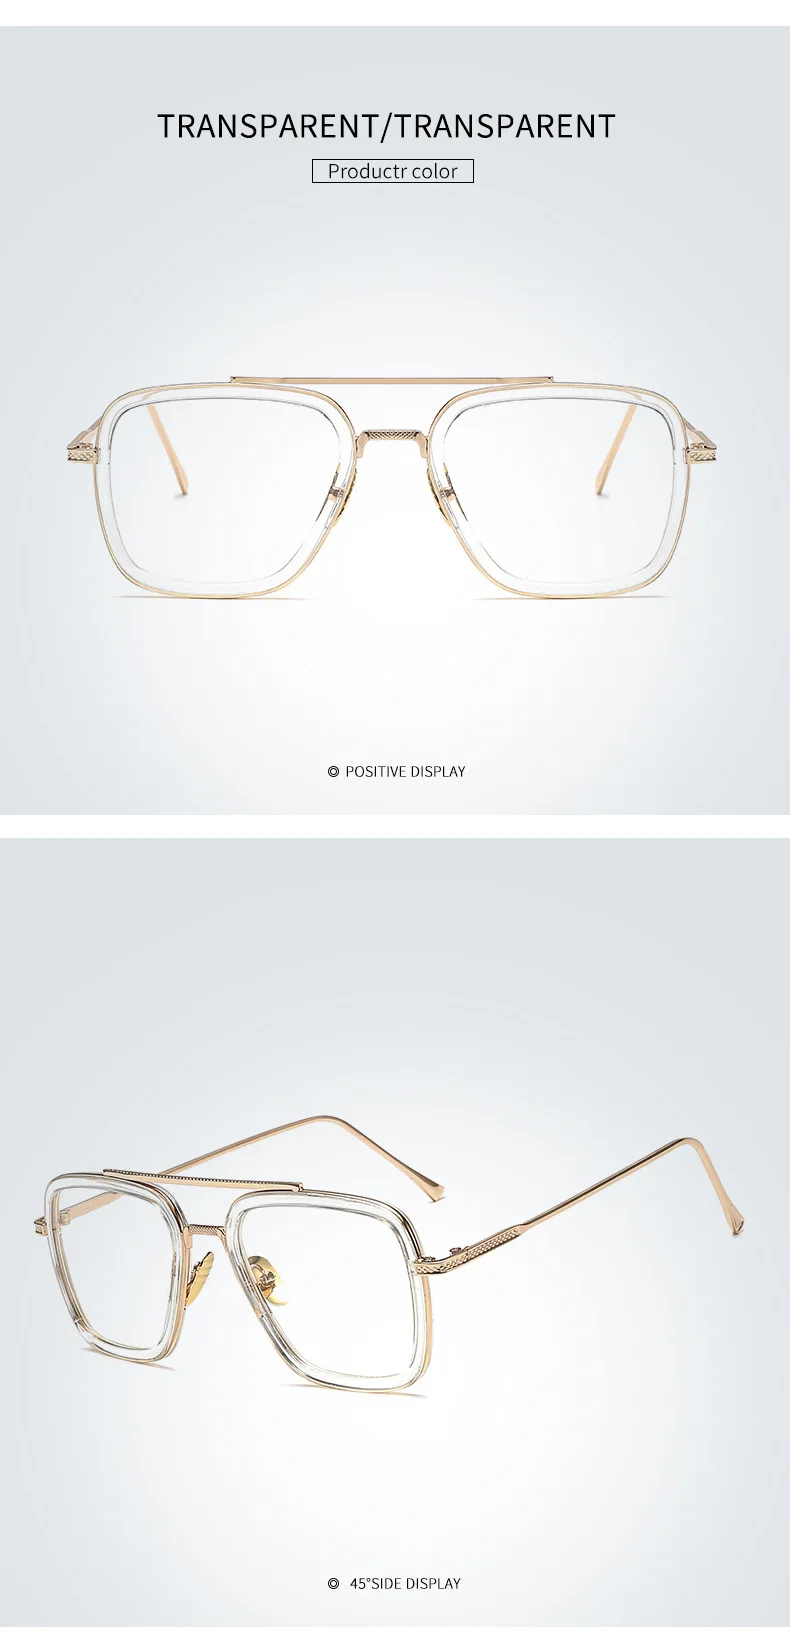 Hdtansen модные Мстители Tony Stark Flight Стиль Солнцезащитные очки для мужчин квадратный авиационный бренд дизайн солнцезащитные очки